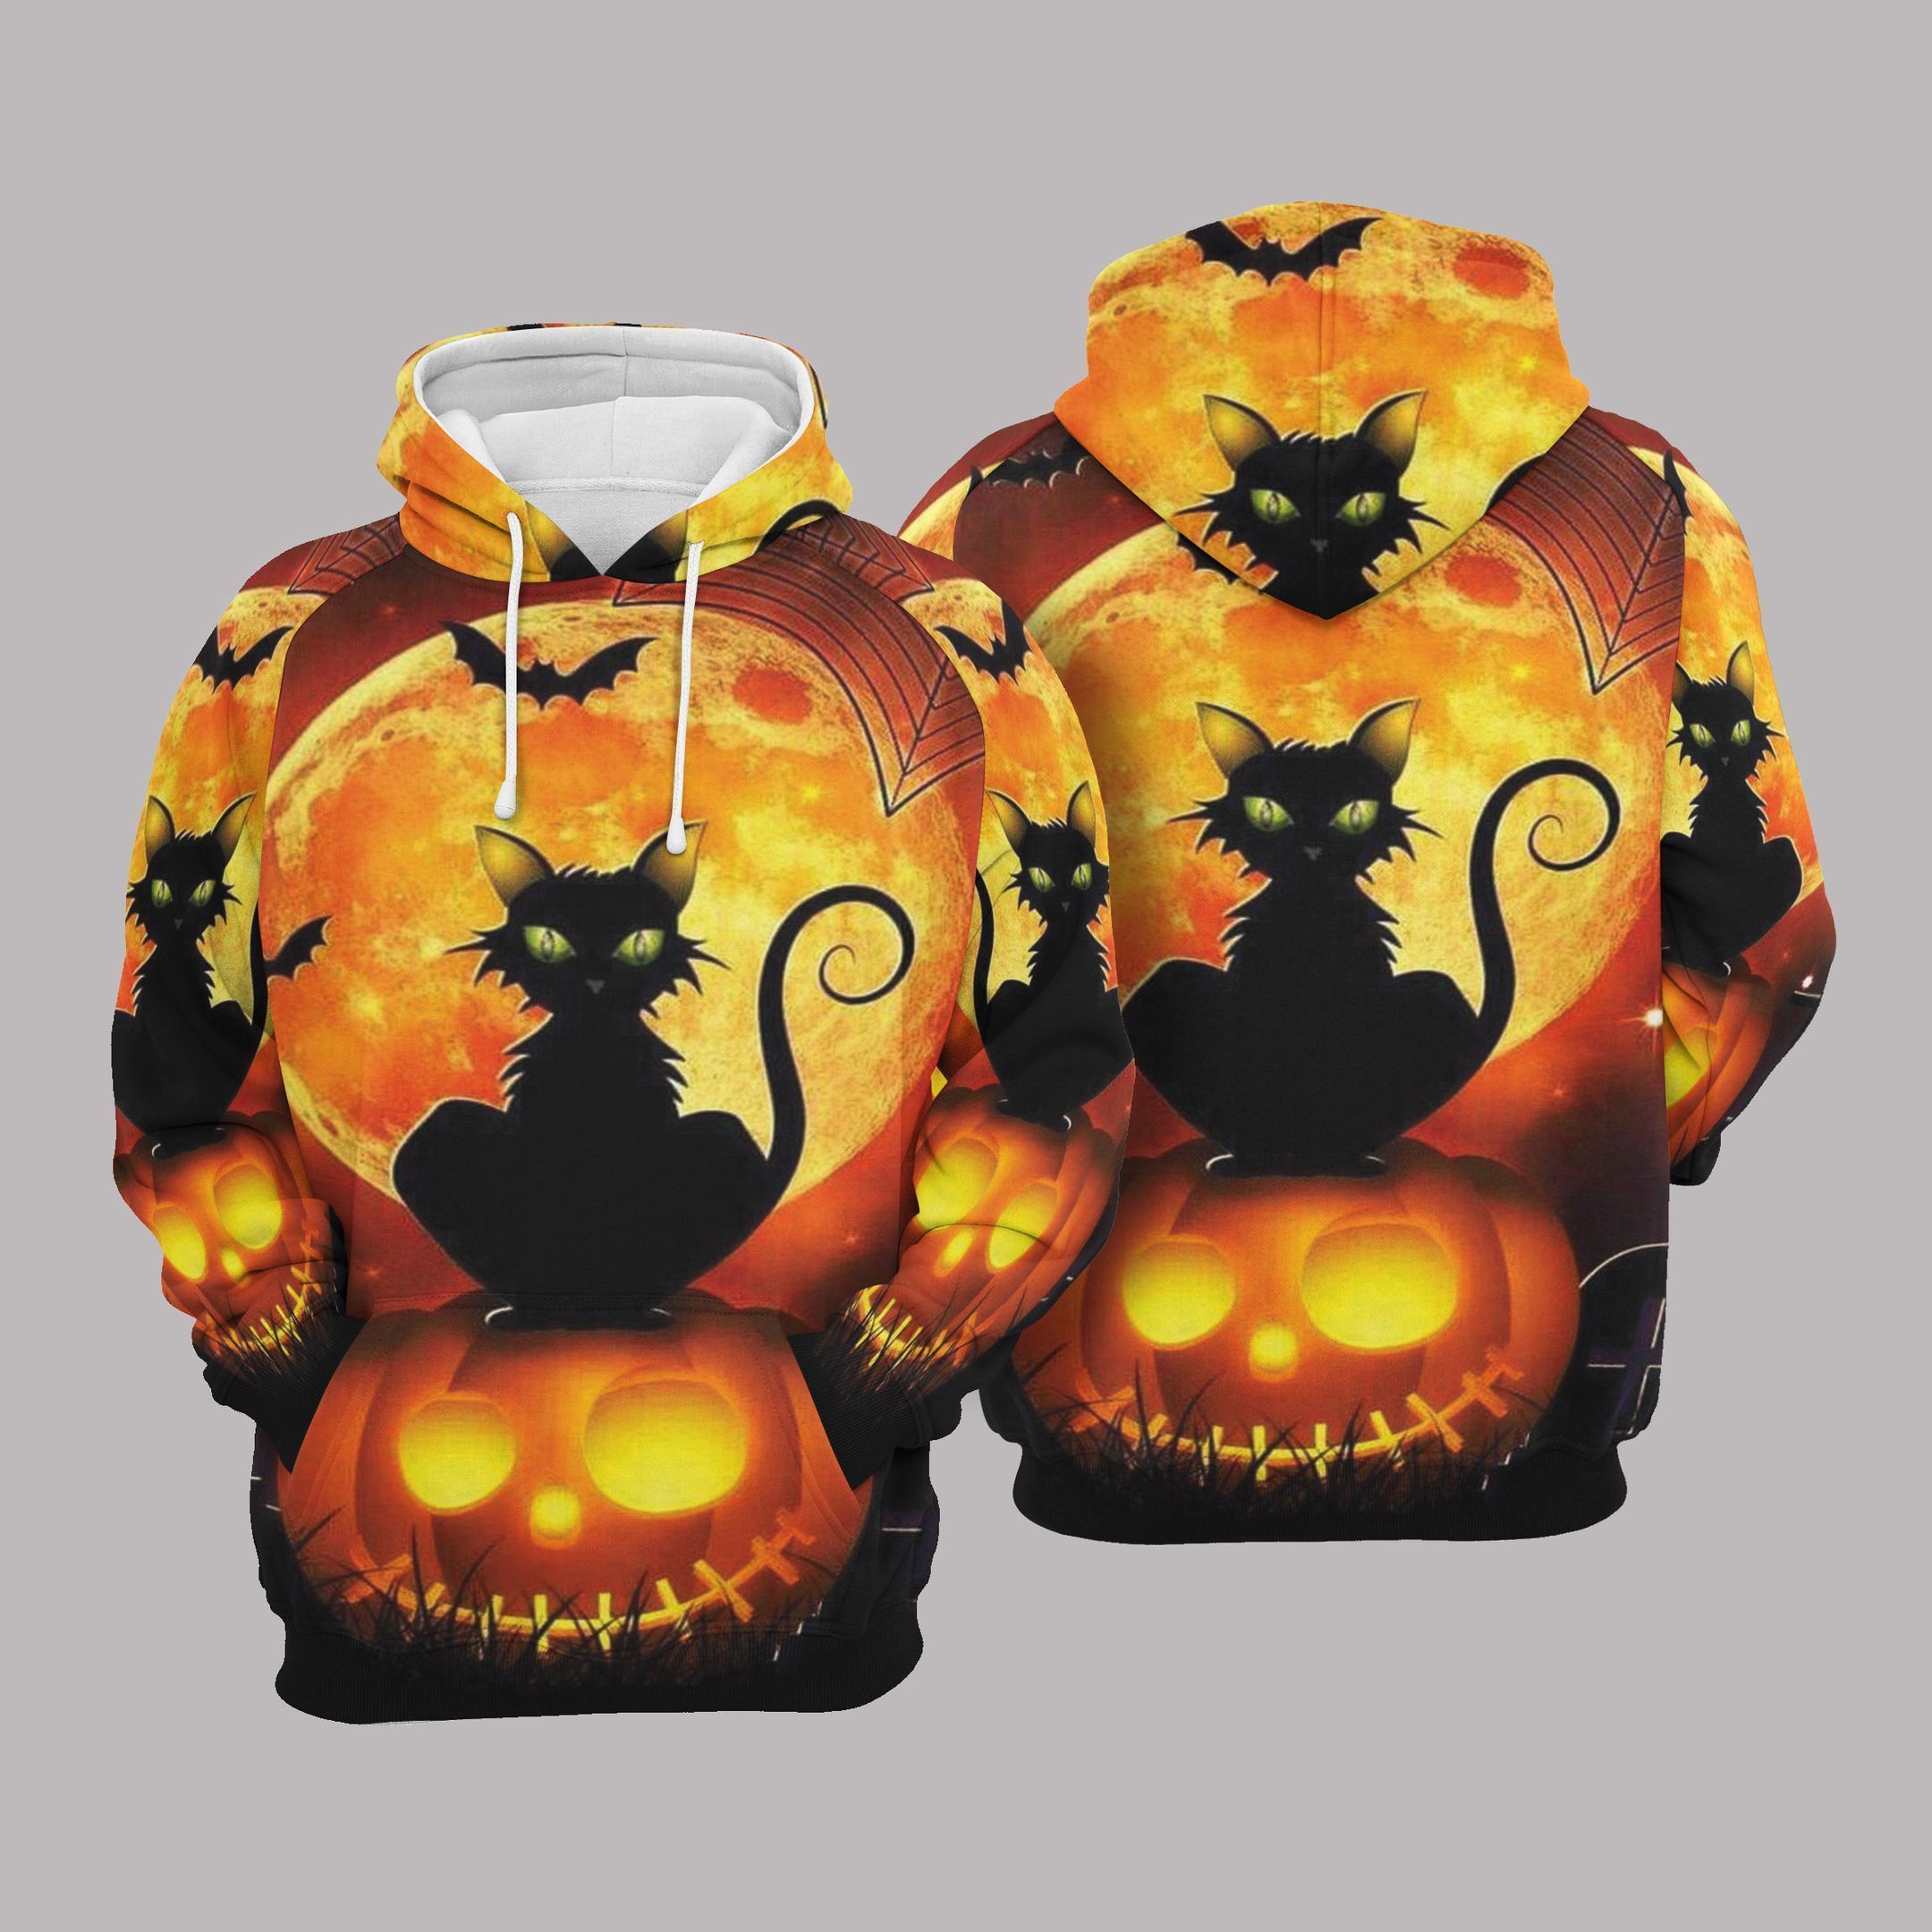 Black Cat Sit On Pumpkin 3D All Over Print Hoodies/ Premium Hoodie For Halloween 2022